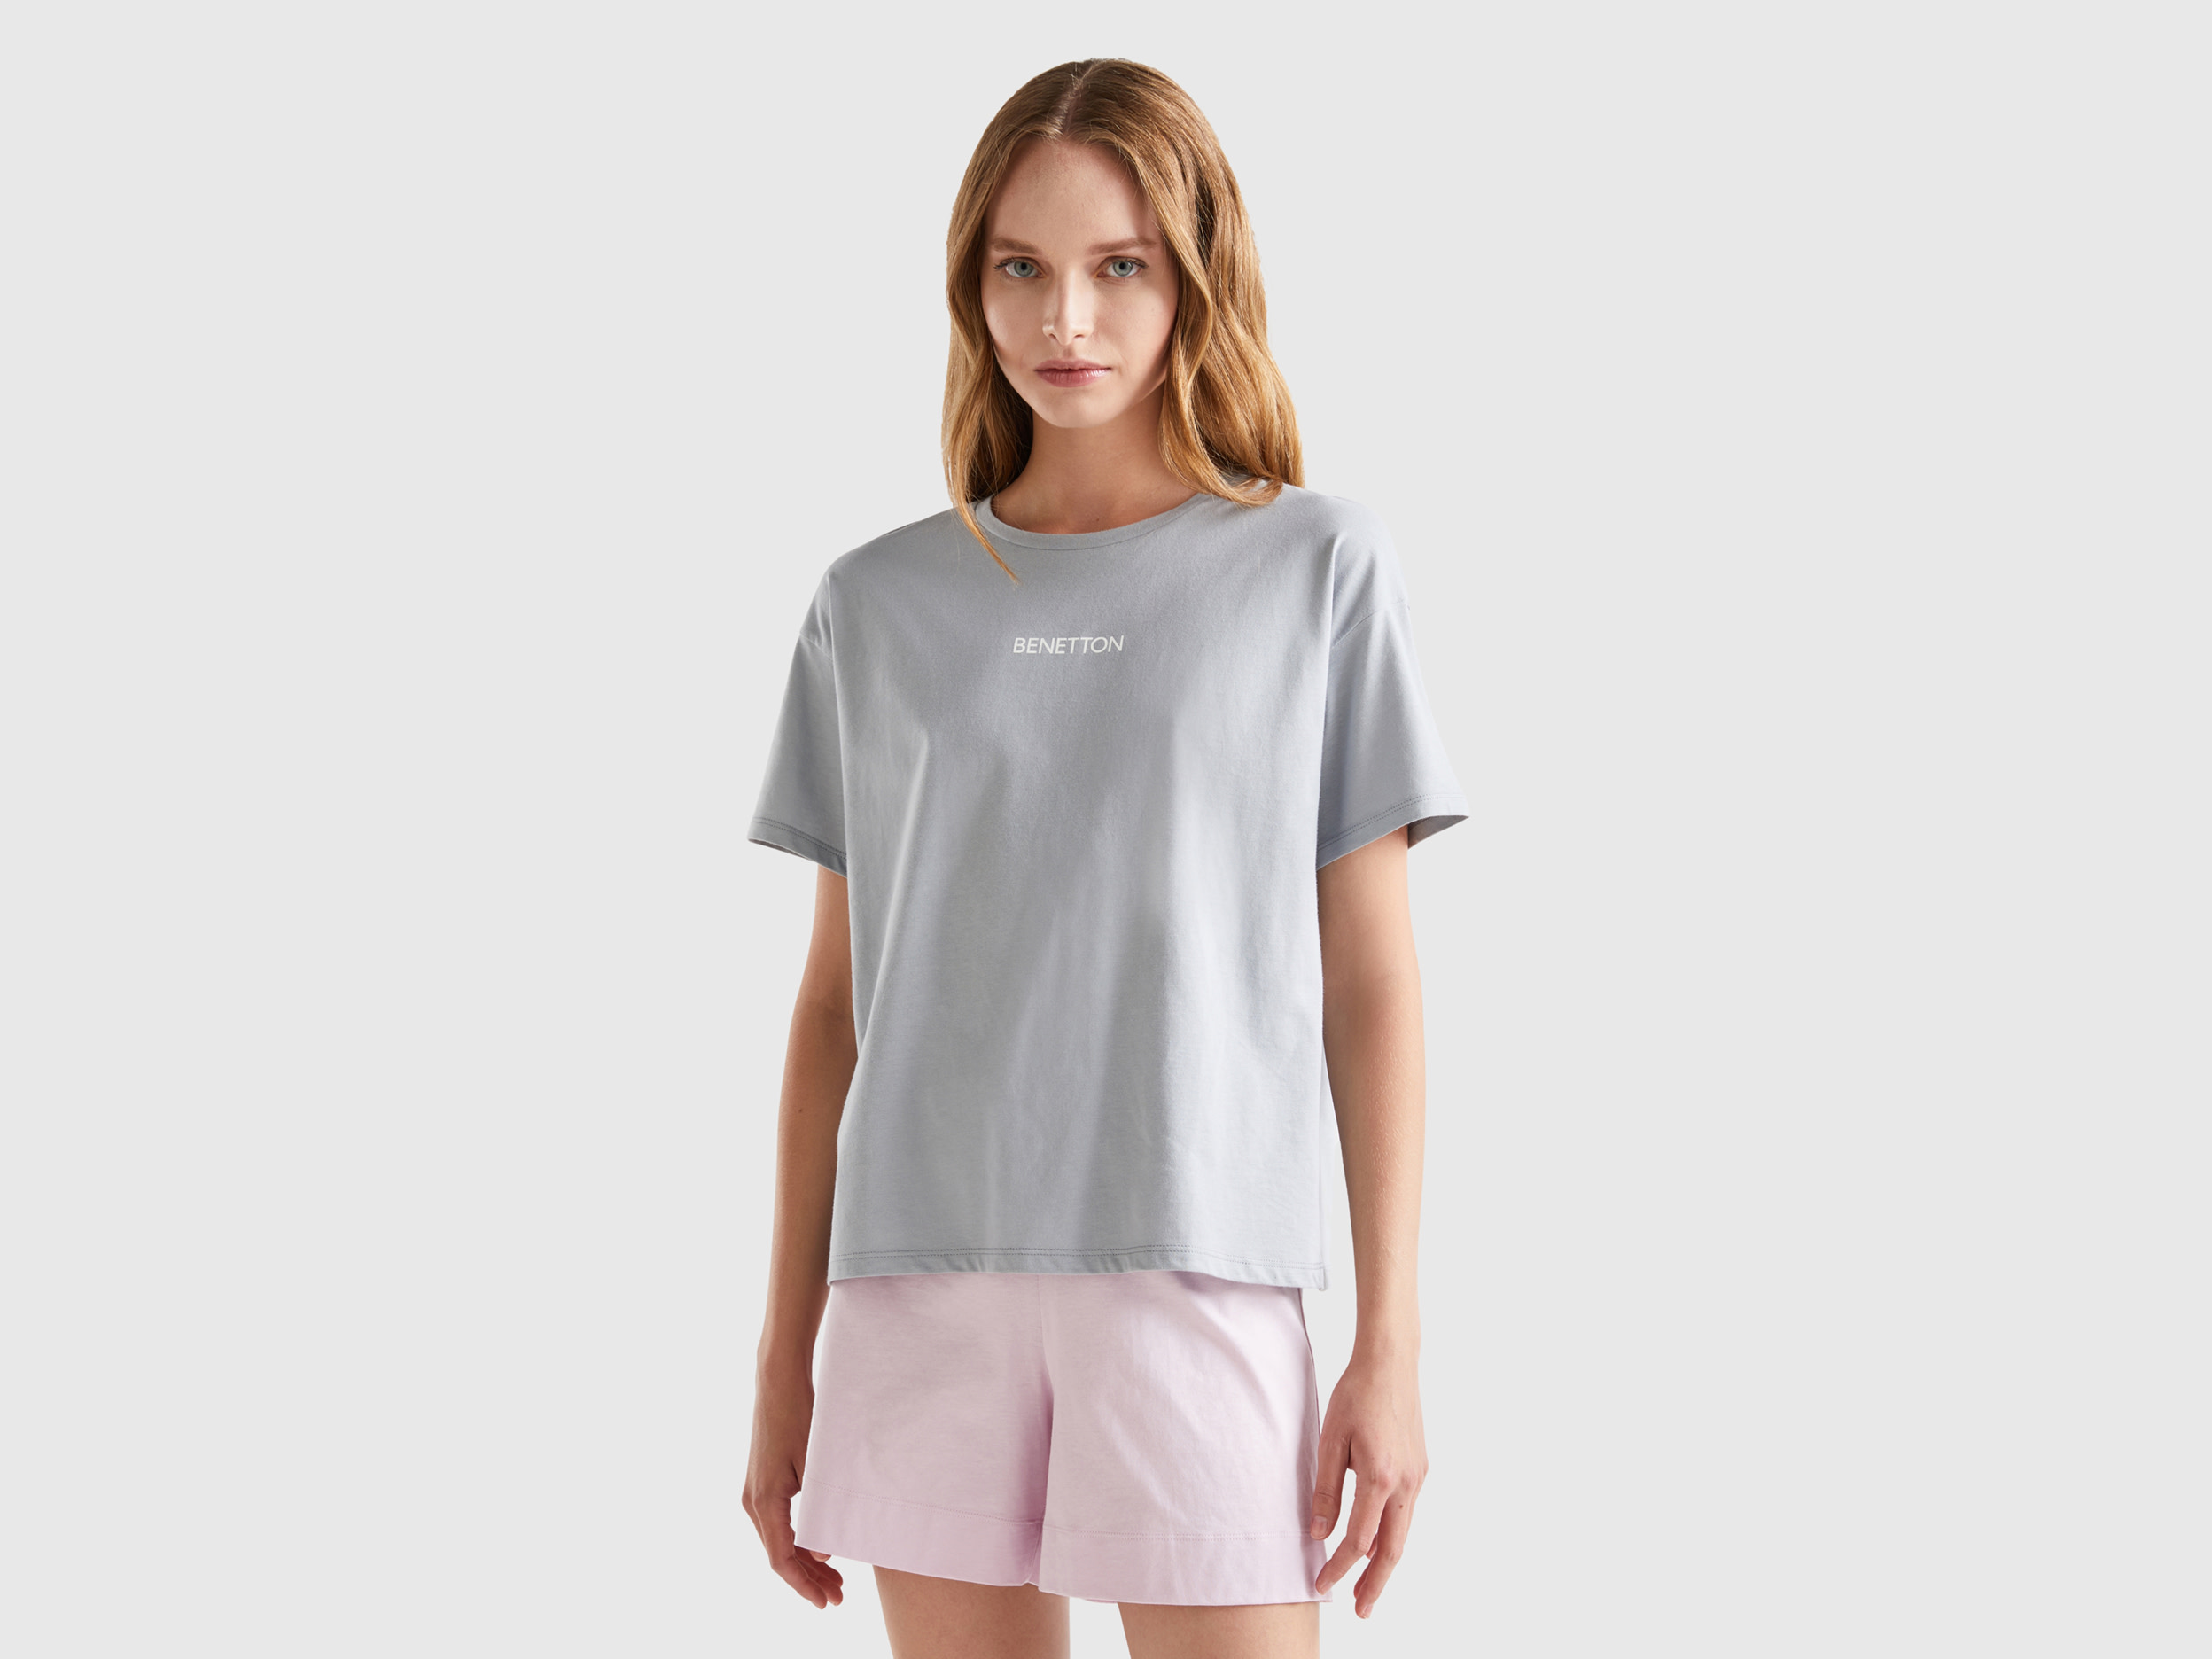 Benetton, 100% Cotton T-shirt, size M, Light Gray, Women